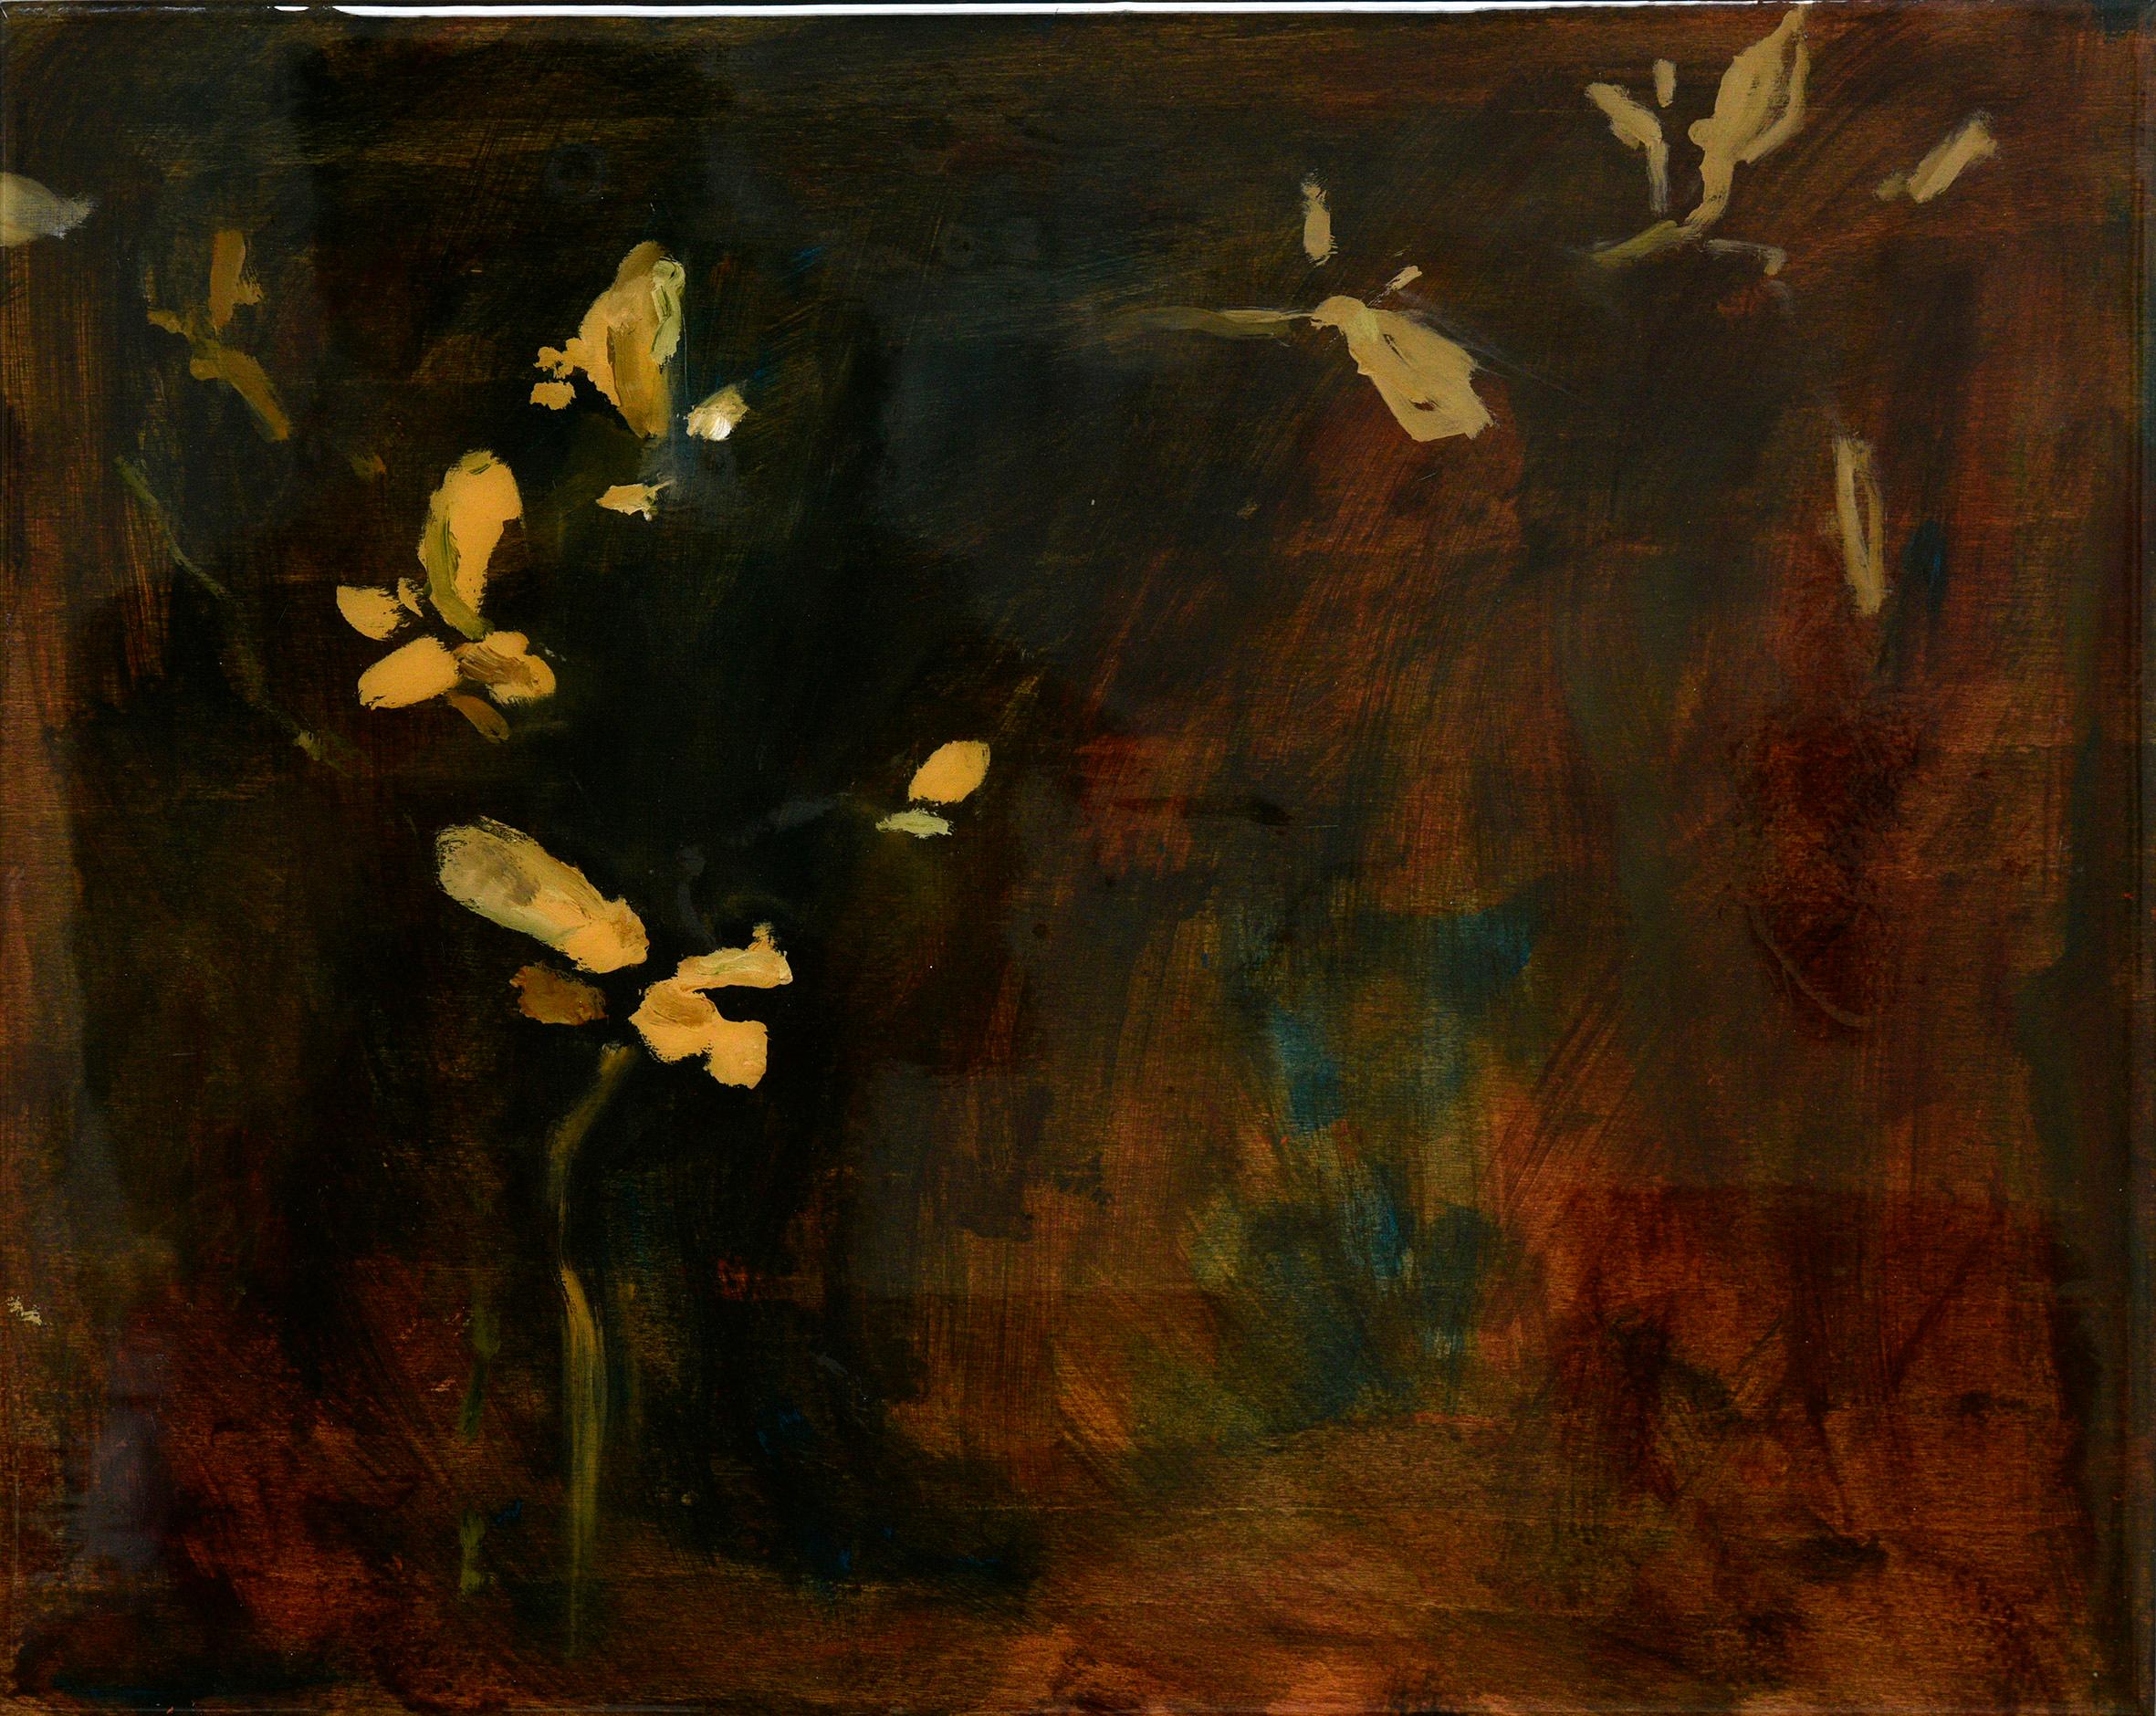 Joanna Skurska Landscape Painting - Astwerk_88- Minimalist, Acrylic, Resin on Wood, 21st Century, Floral Painting